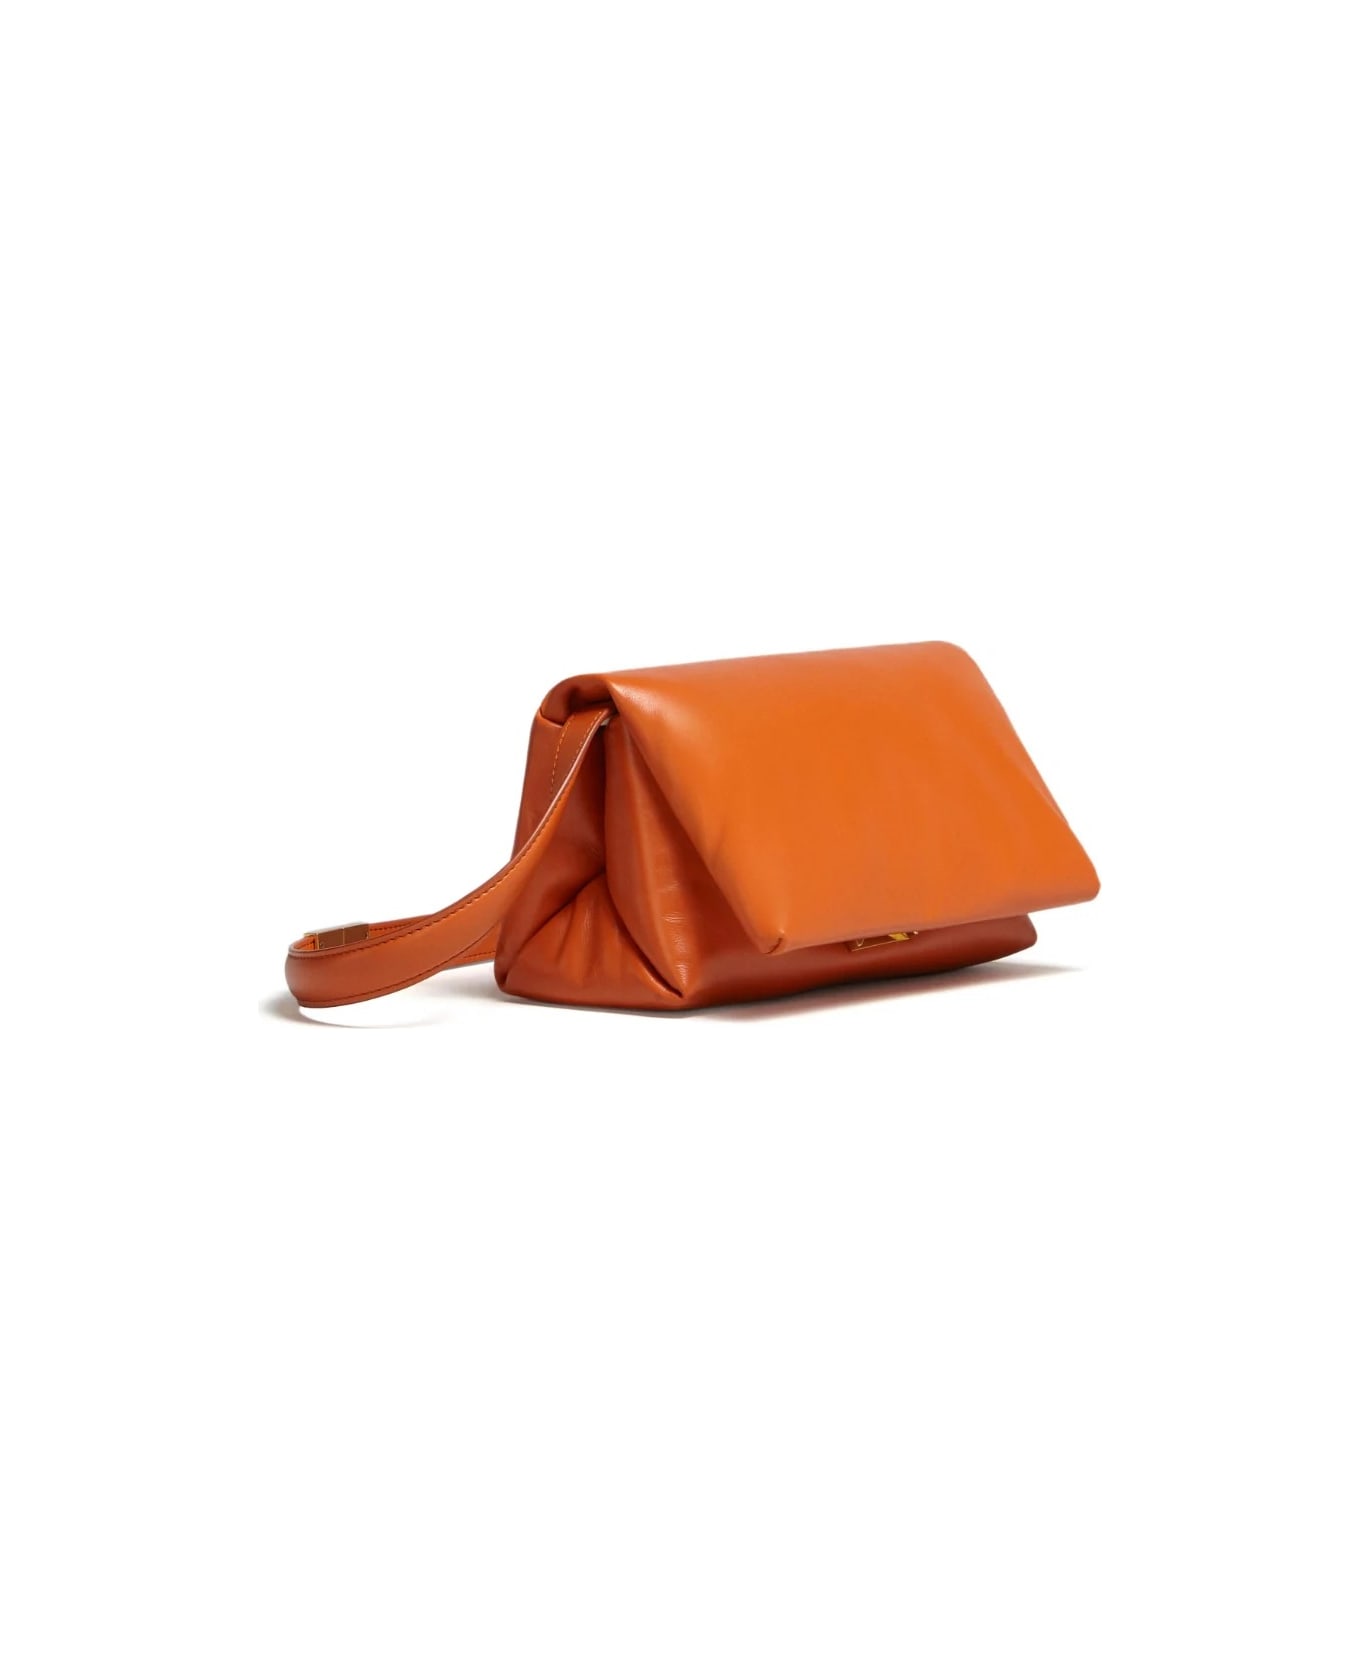 Marni Small Prisma Bag In Orange Leather - Arancione